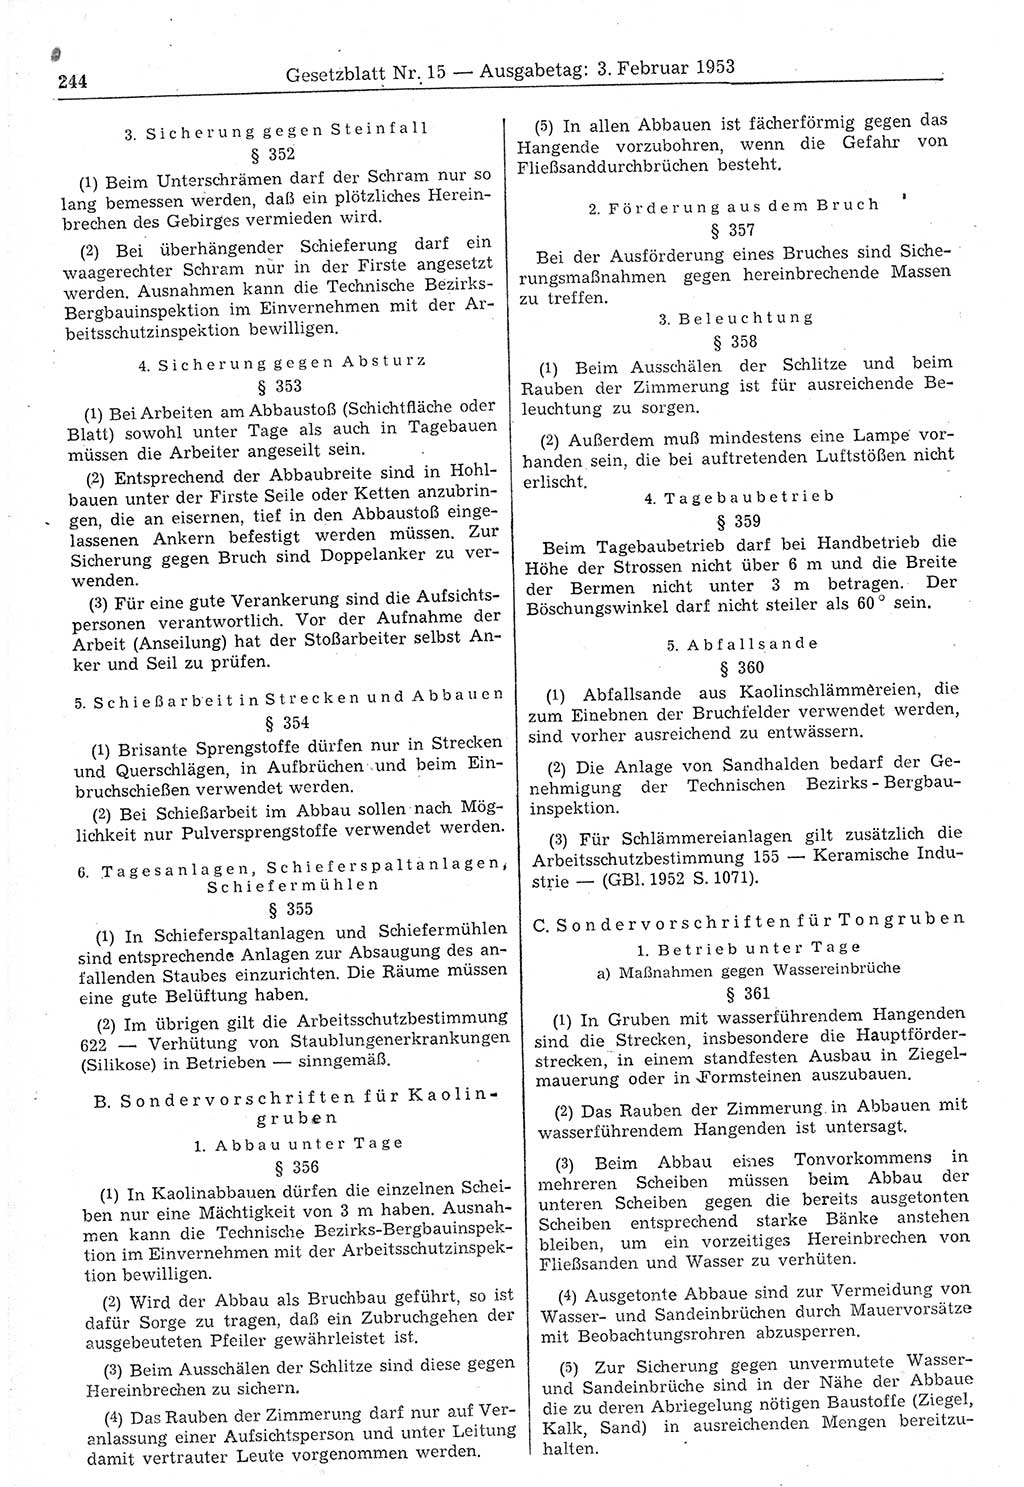 Gesetzblatt (GBl.) der Deutschen Demokratischen Republik (DDR) 1953, Seite 244 (GBl. DDR 1953, S. 244)